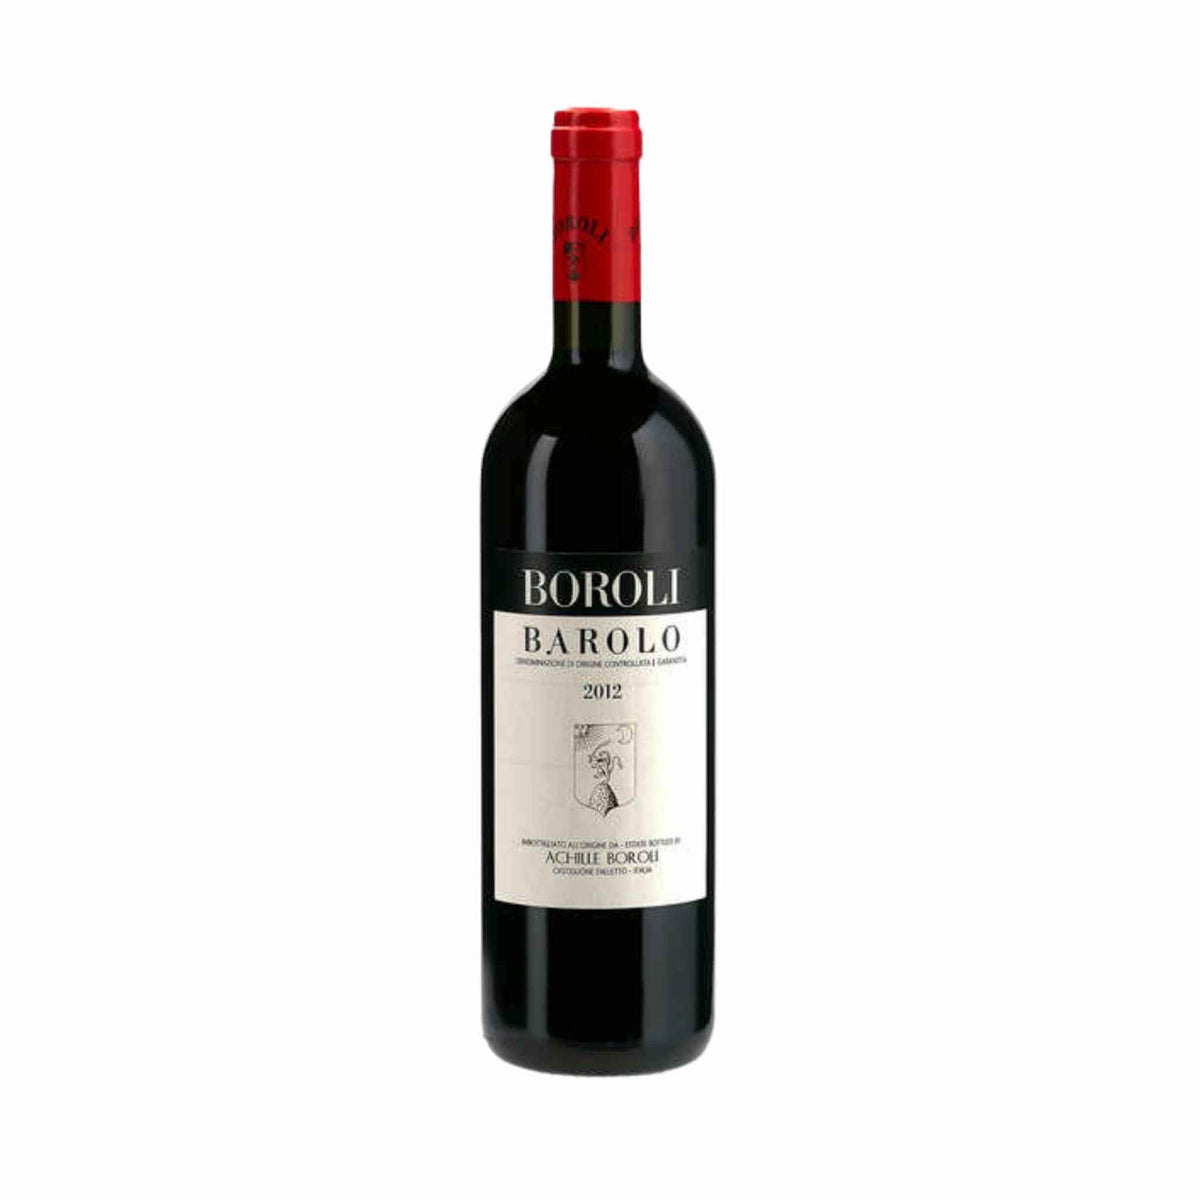 Boroli-Rotwein-Nebbiolo-2017 Barolo Classico-WINECOM